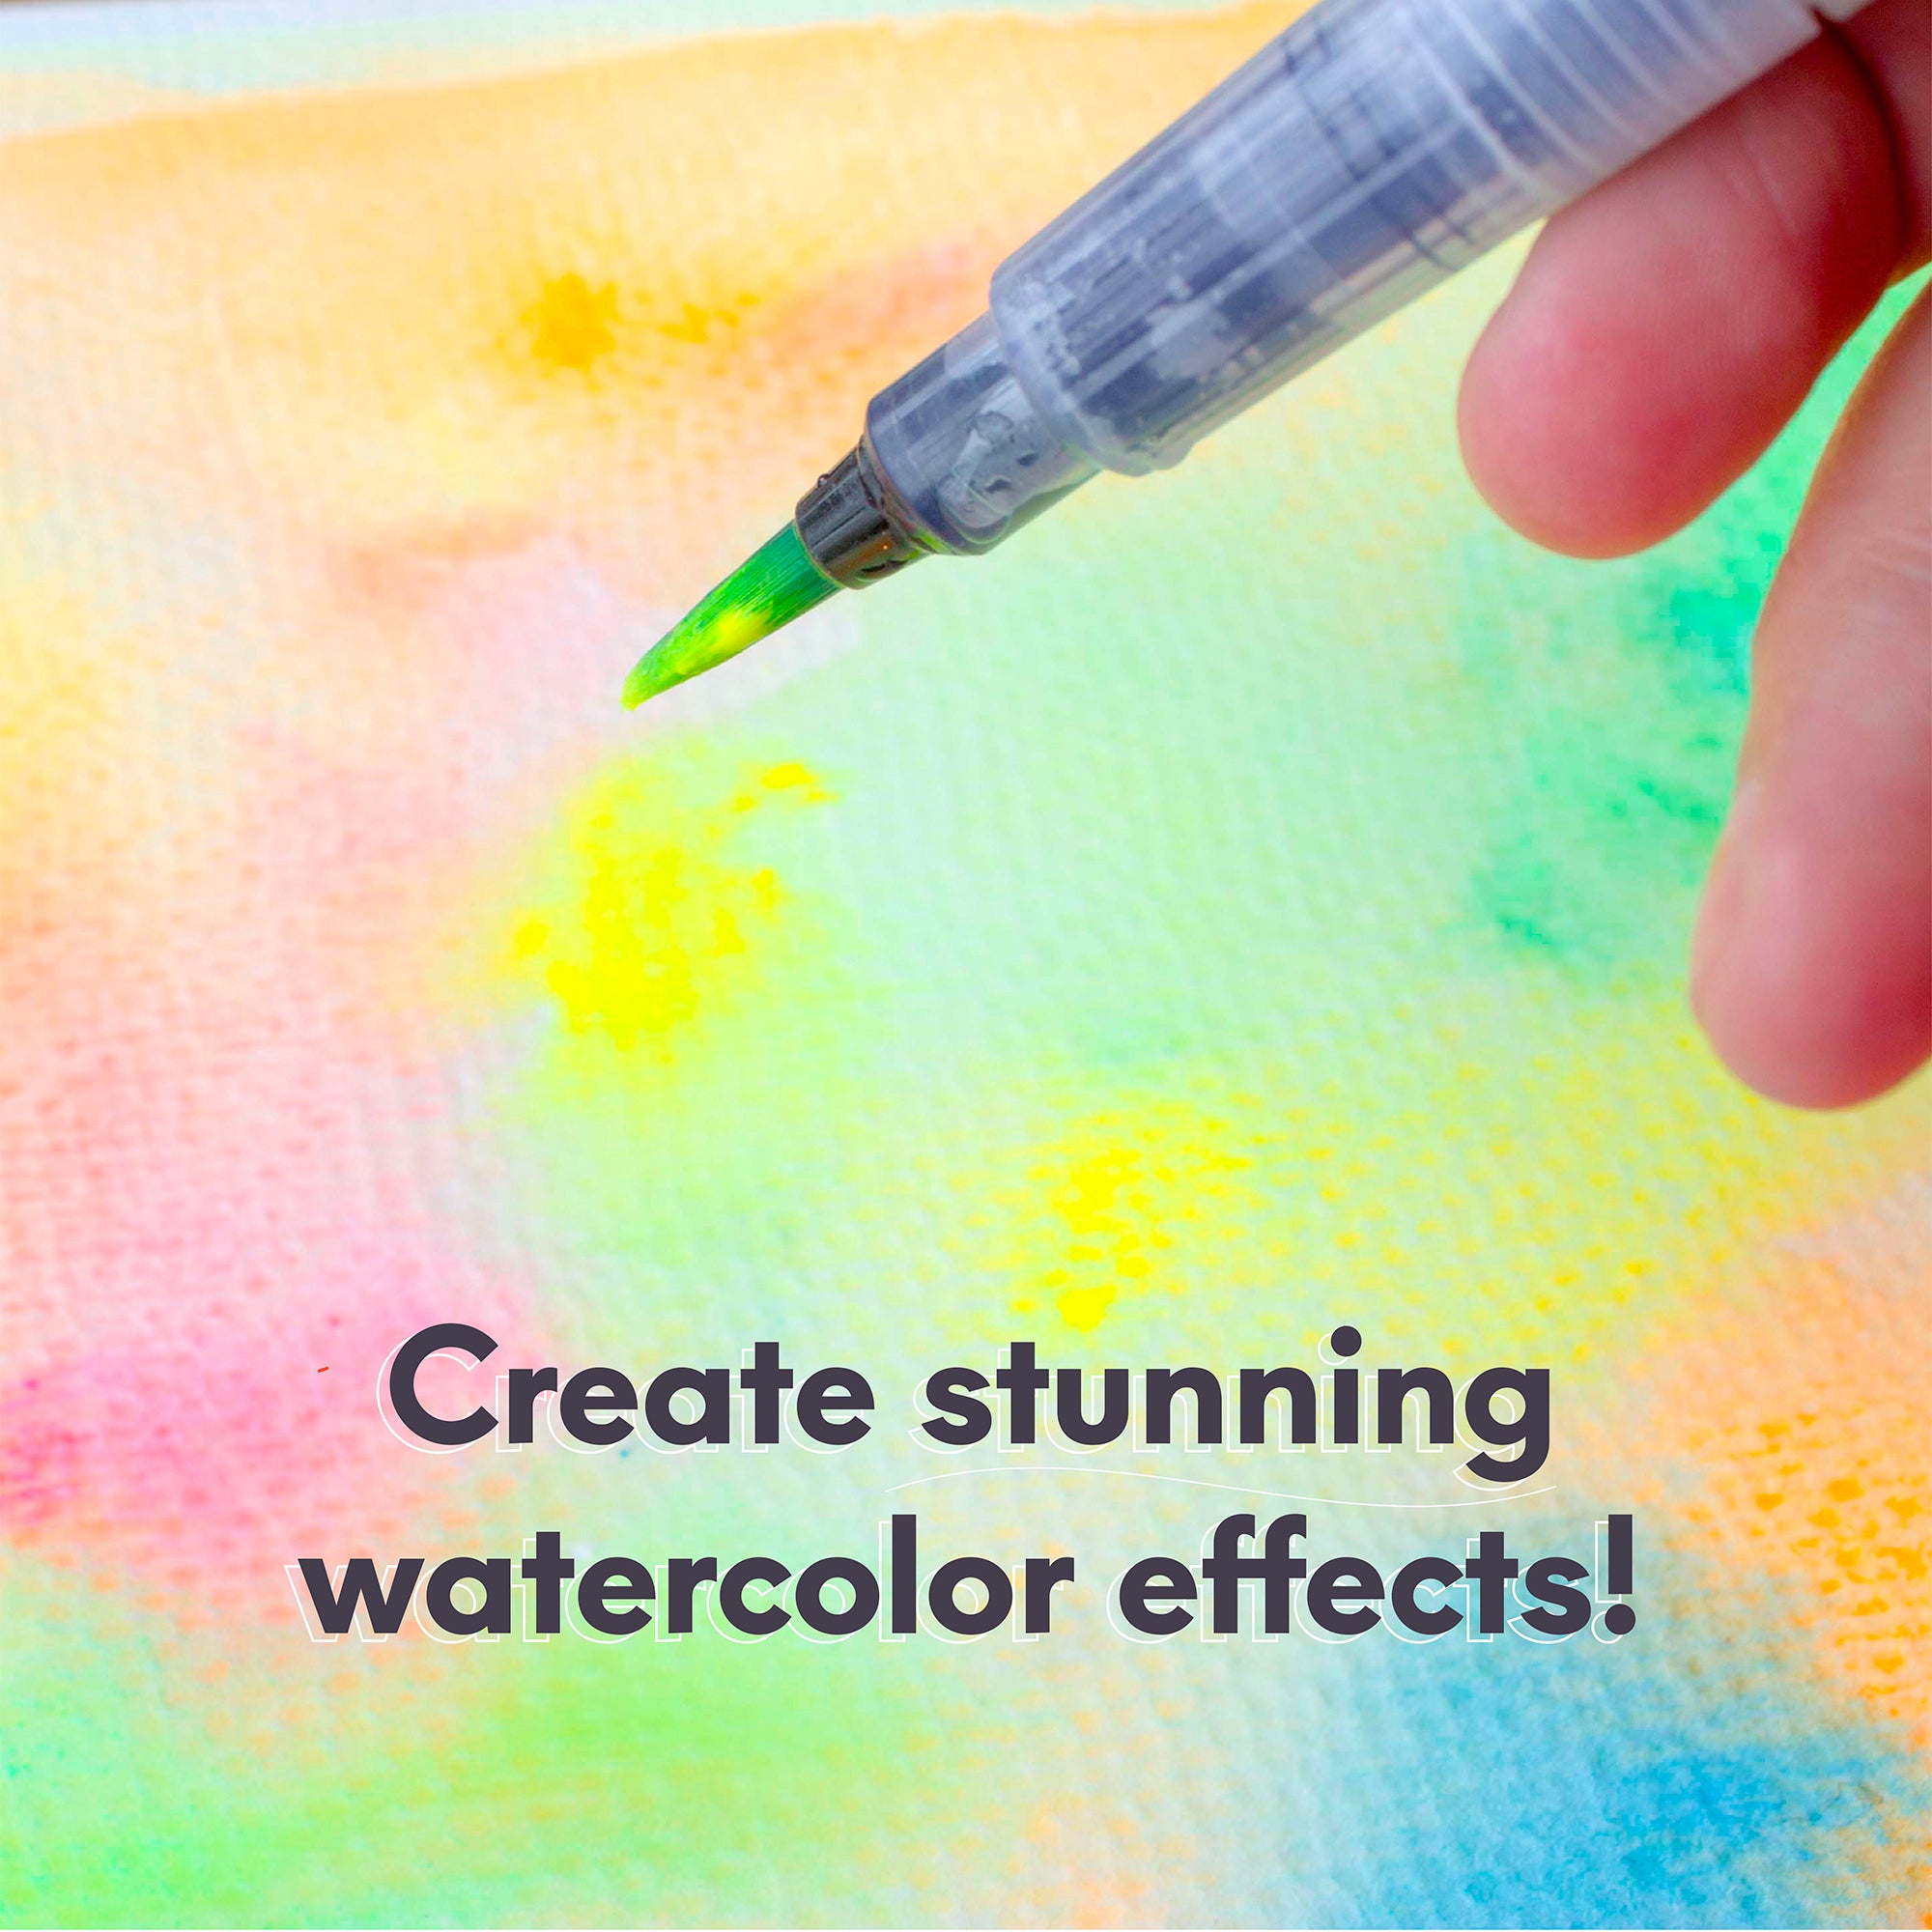 Pixiss Water Brush Pen Set - 6 Refillable Watercolor Paint Pens